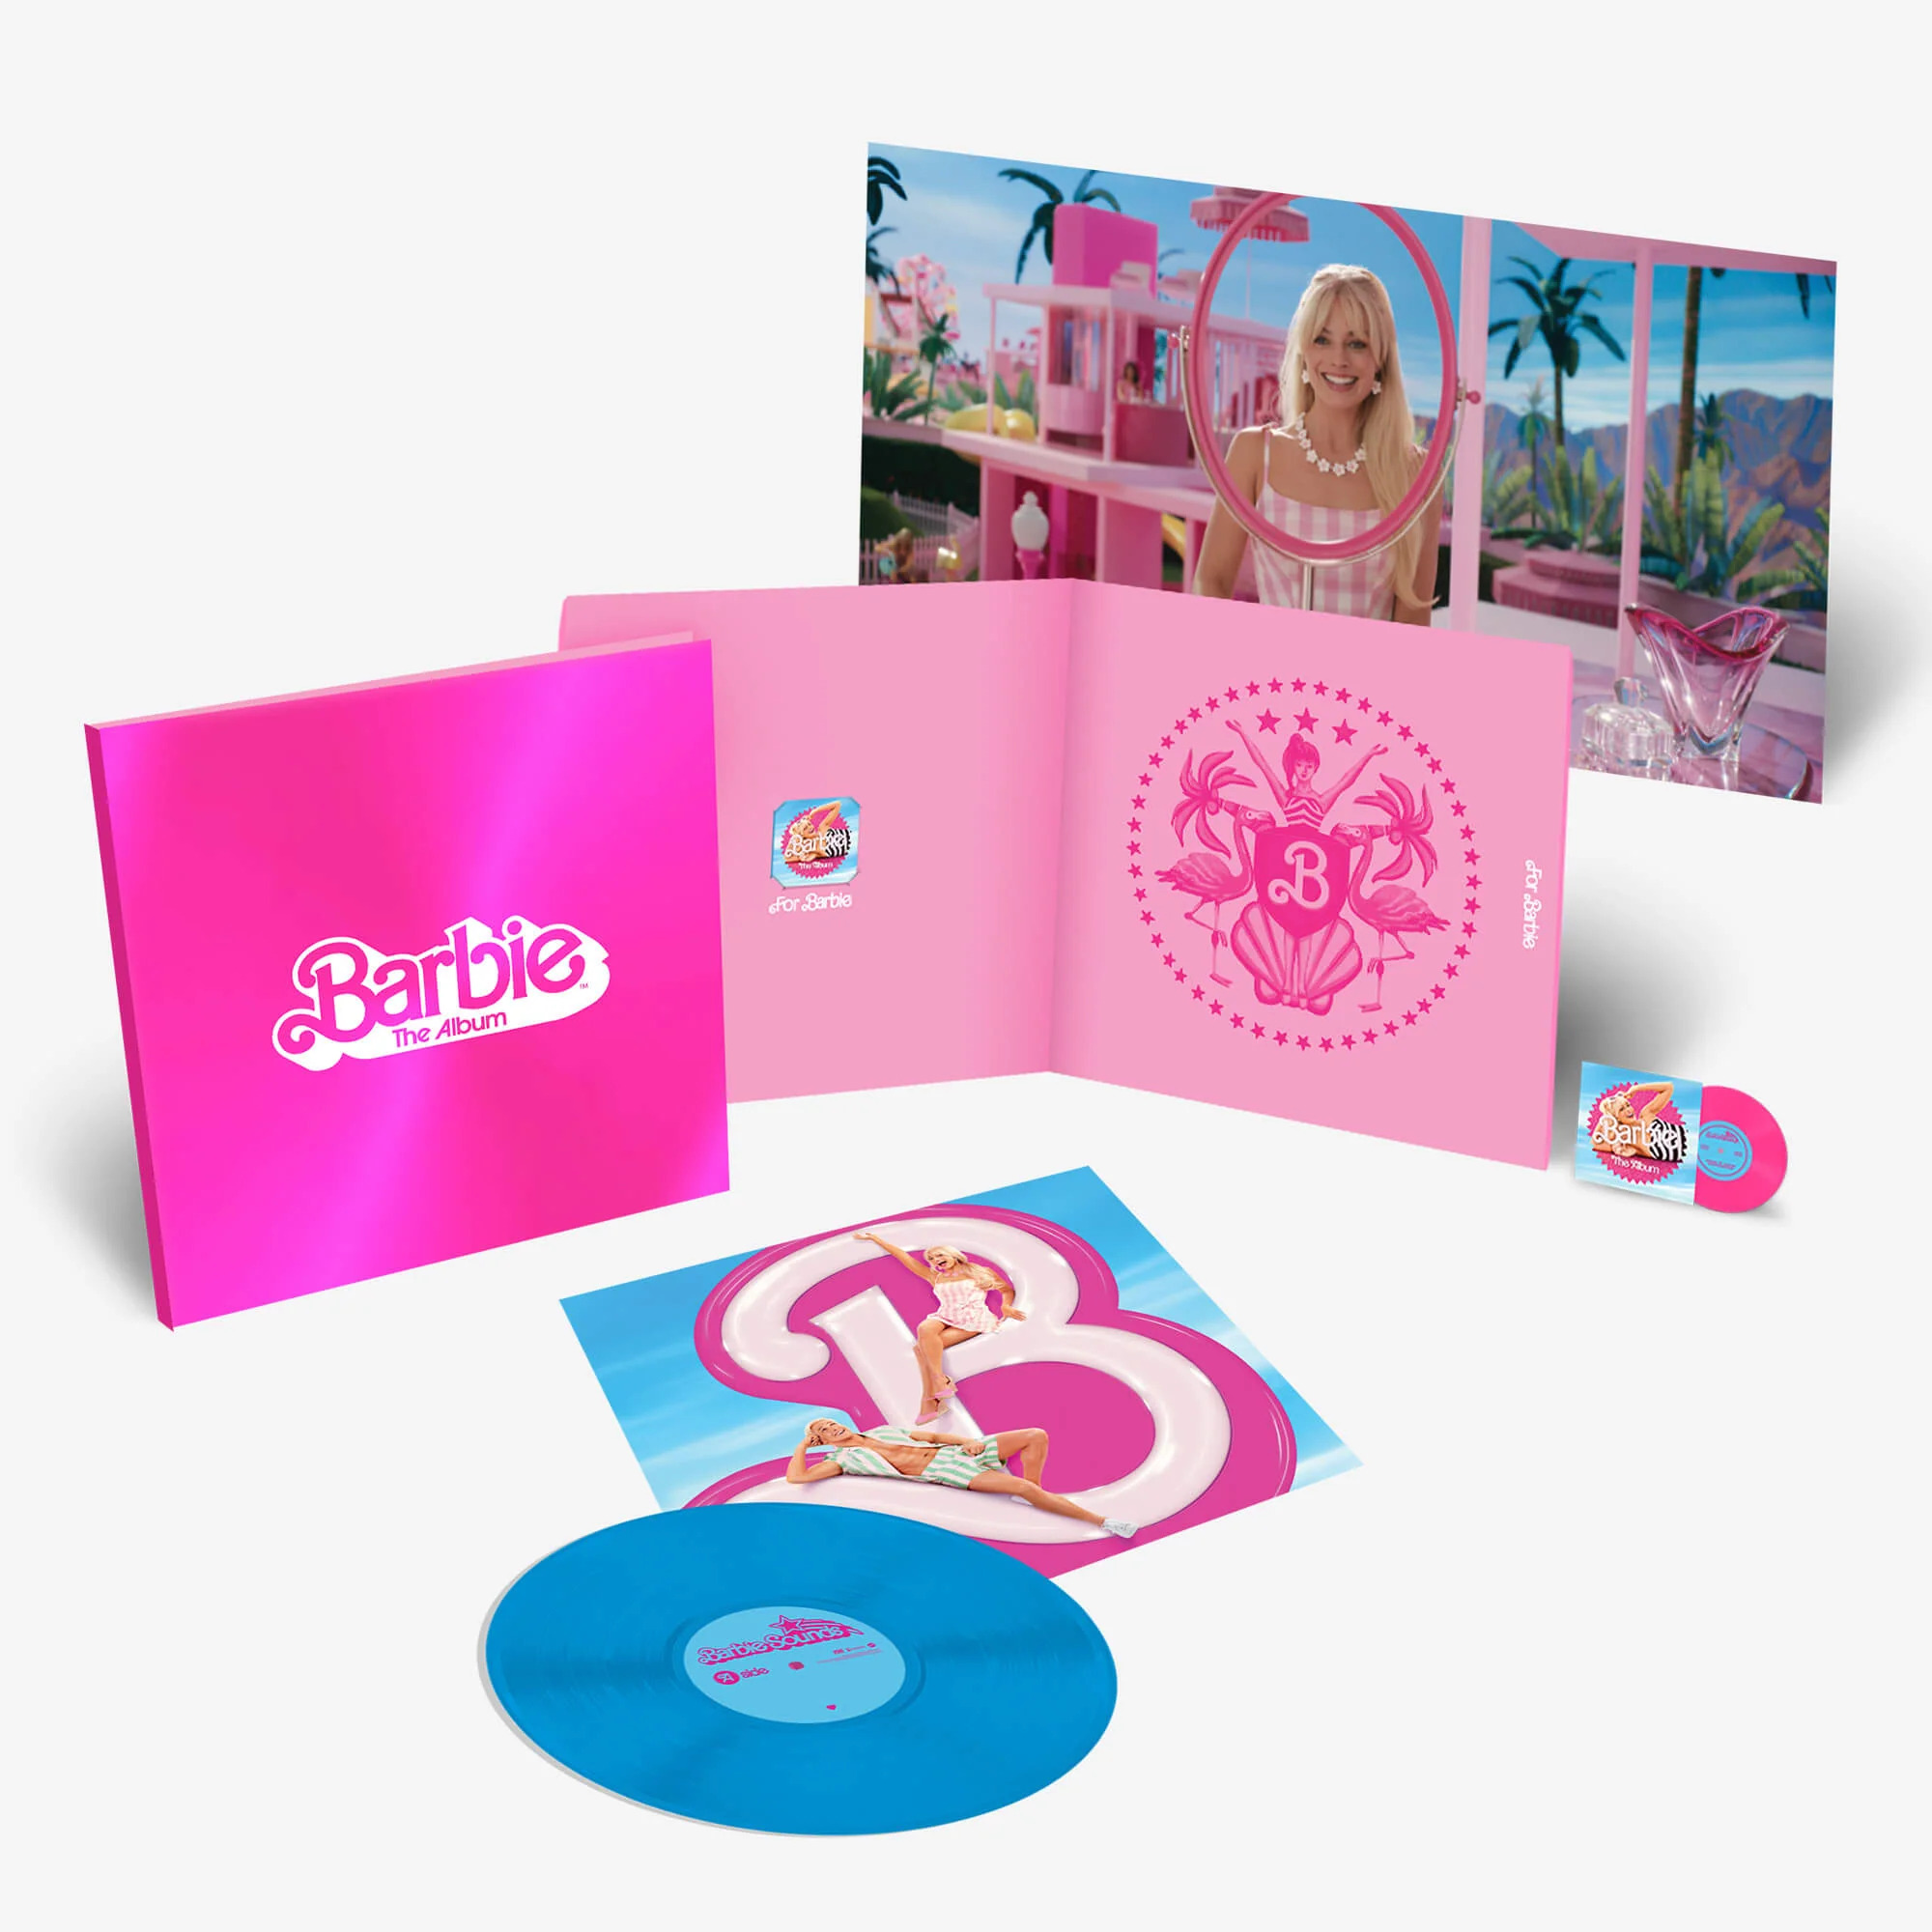 Barbie The Album Soundtrack Walmart Exclusive Clear Pink Splatter Vinyl in Hand